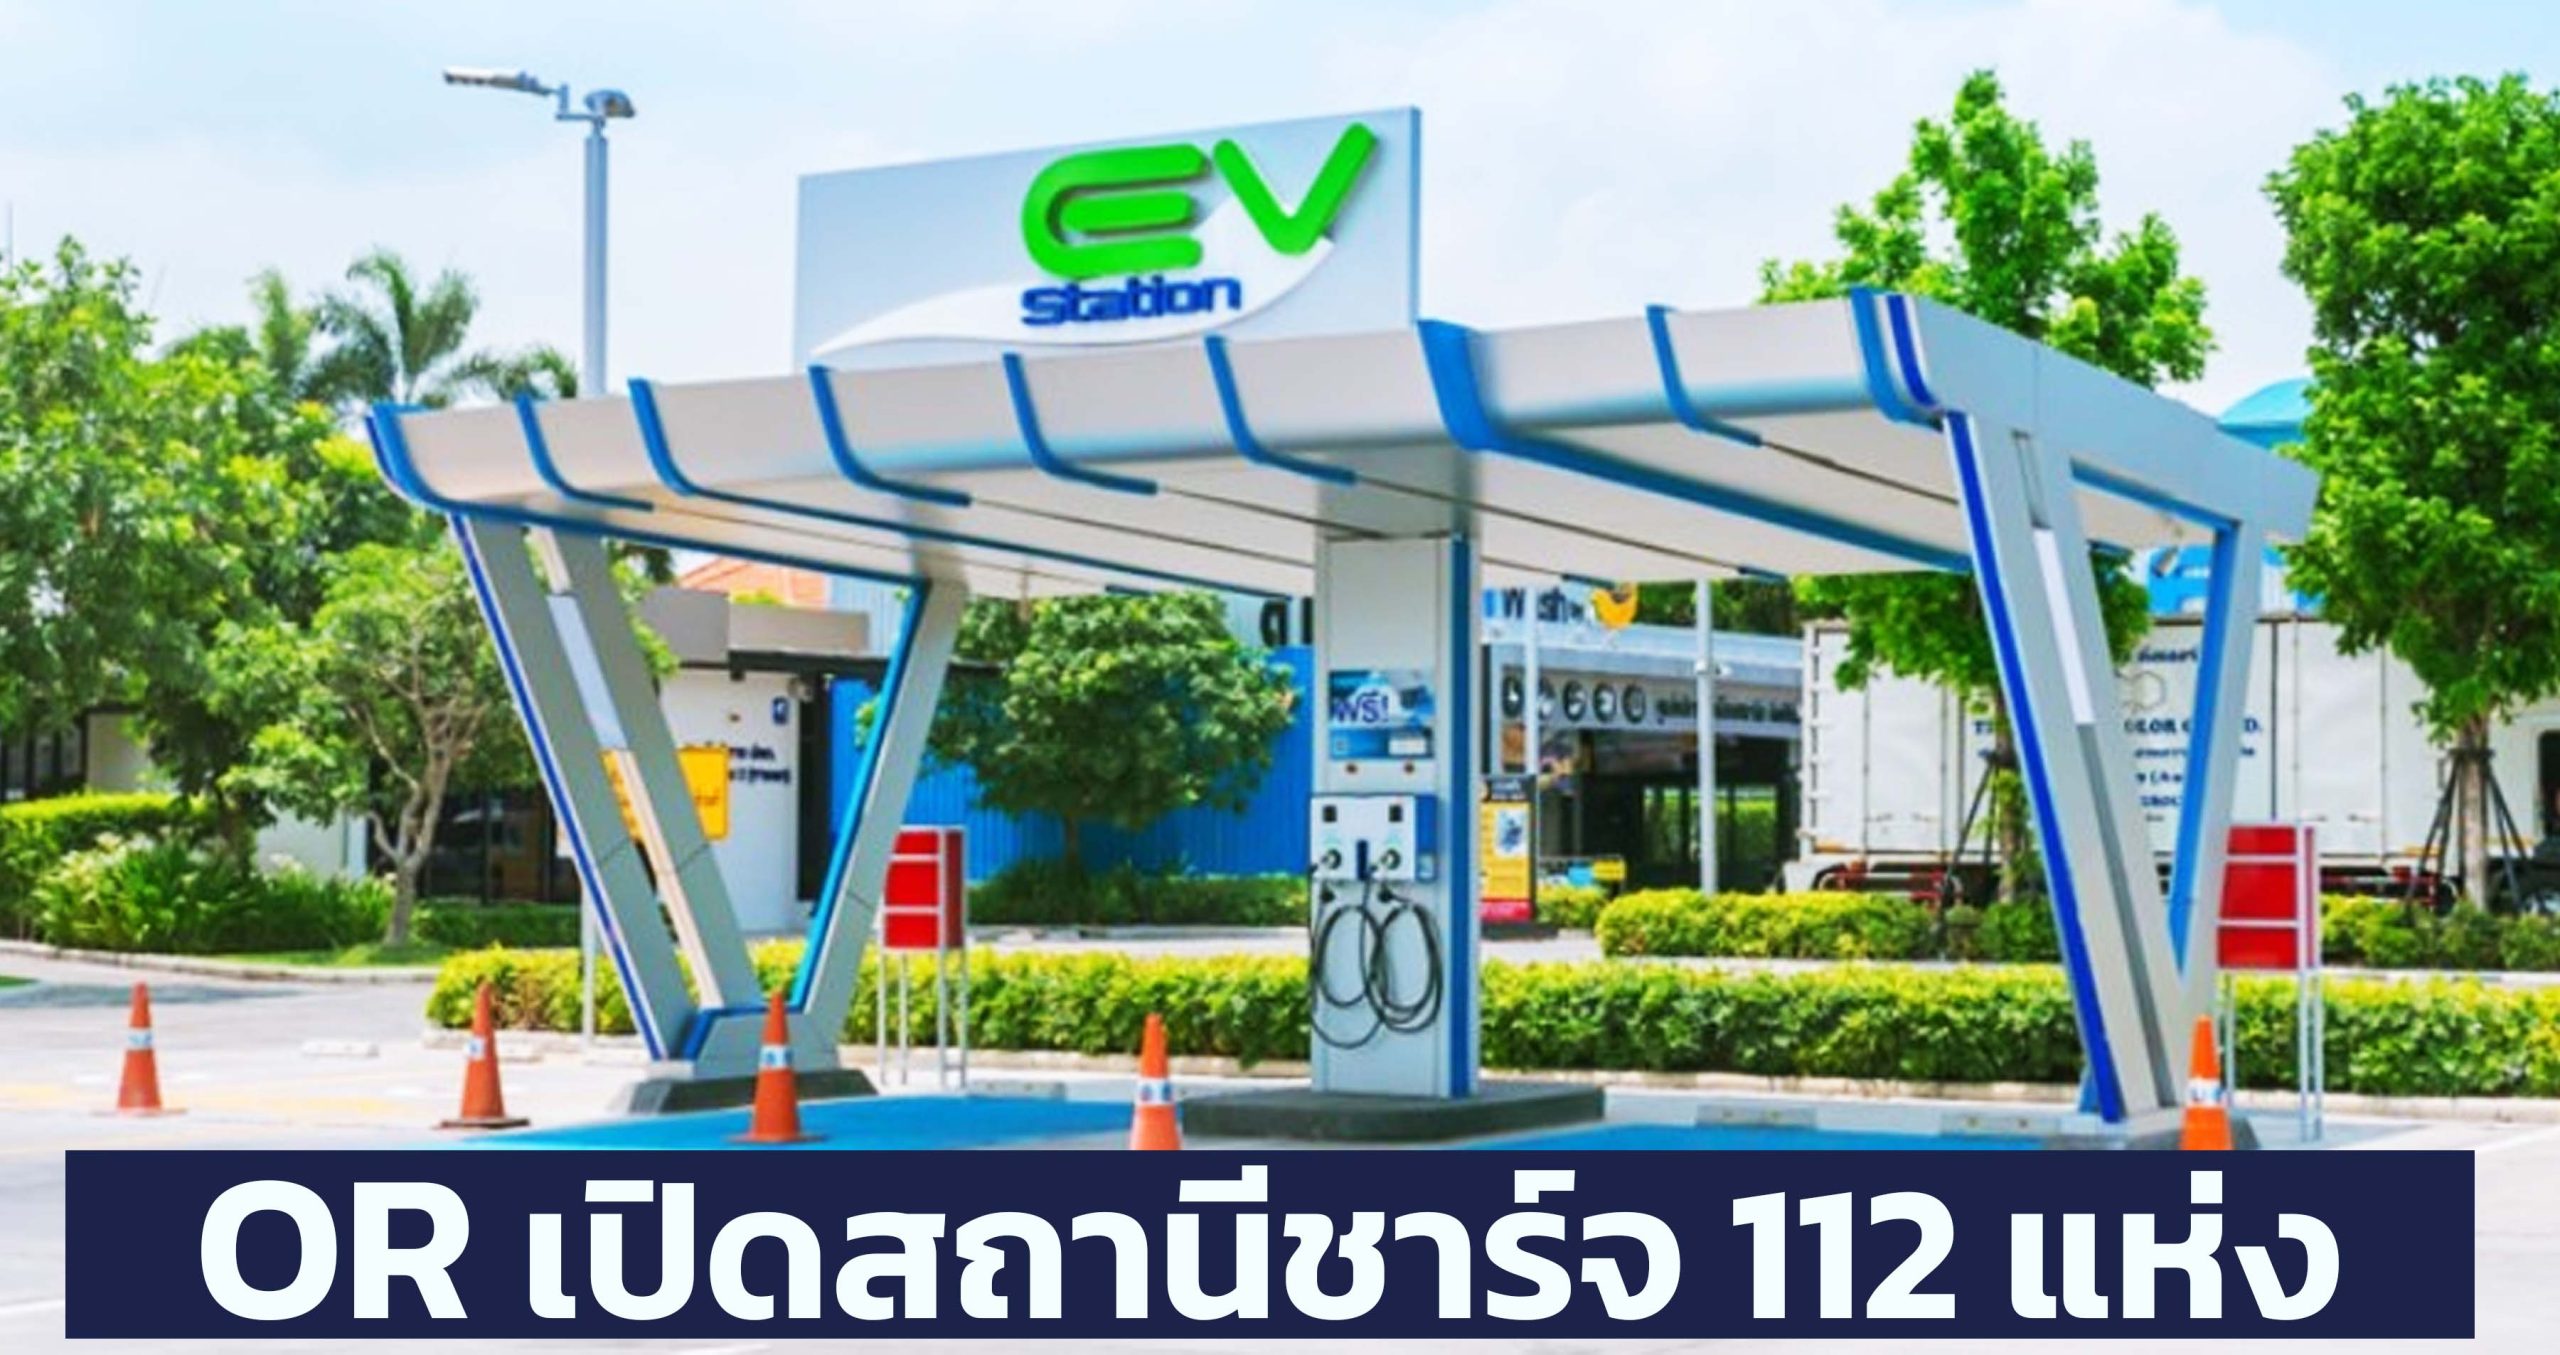 OR เปิดสถานีชาร์จ 112 แห่ง เริ่มต้นที่หน่วยละ 4.5 บาท ในไทย เริ่ม สิงหาคมนี้